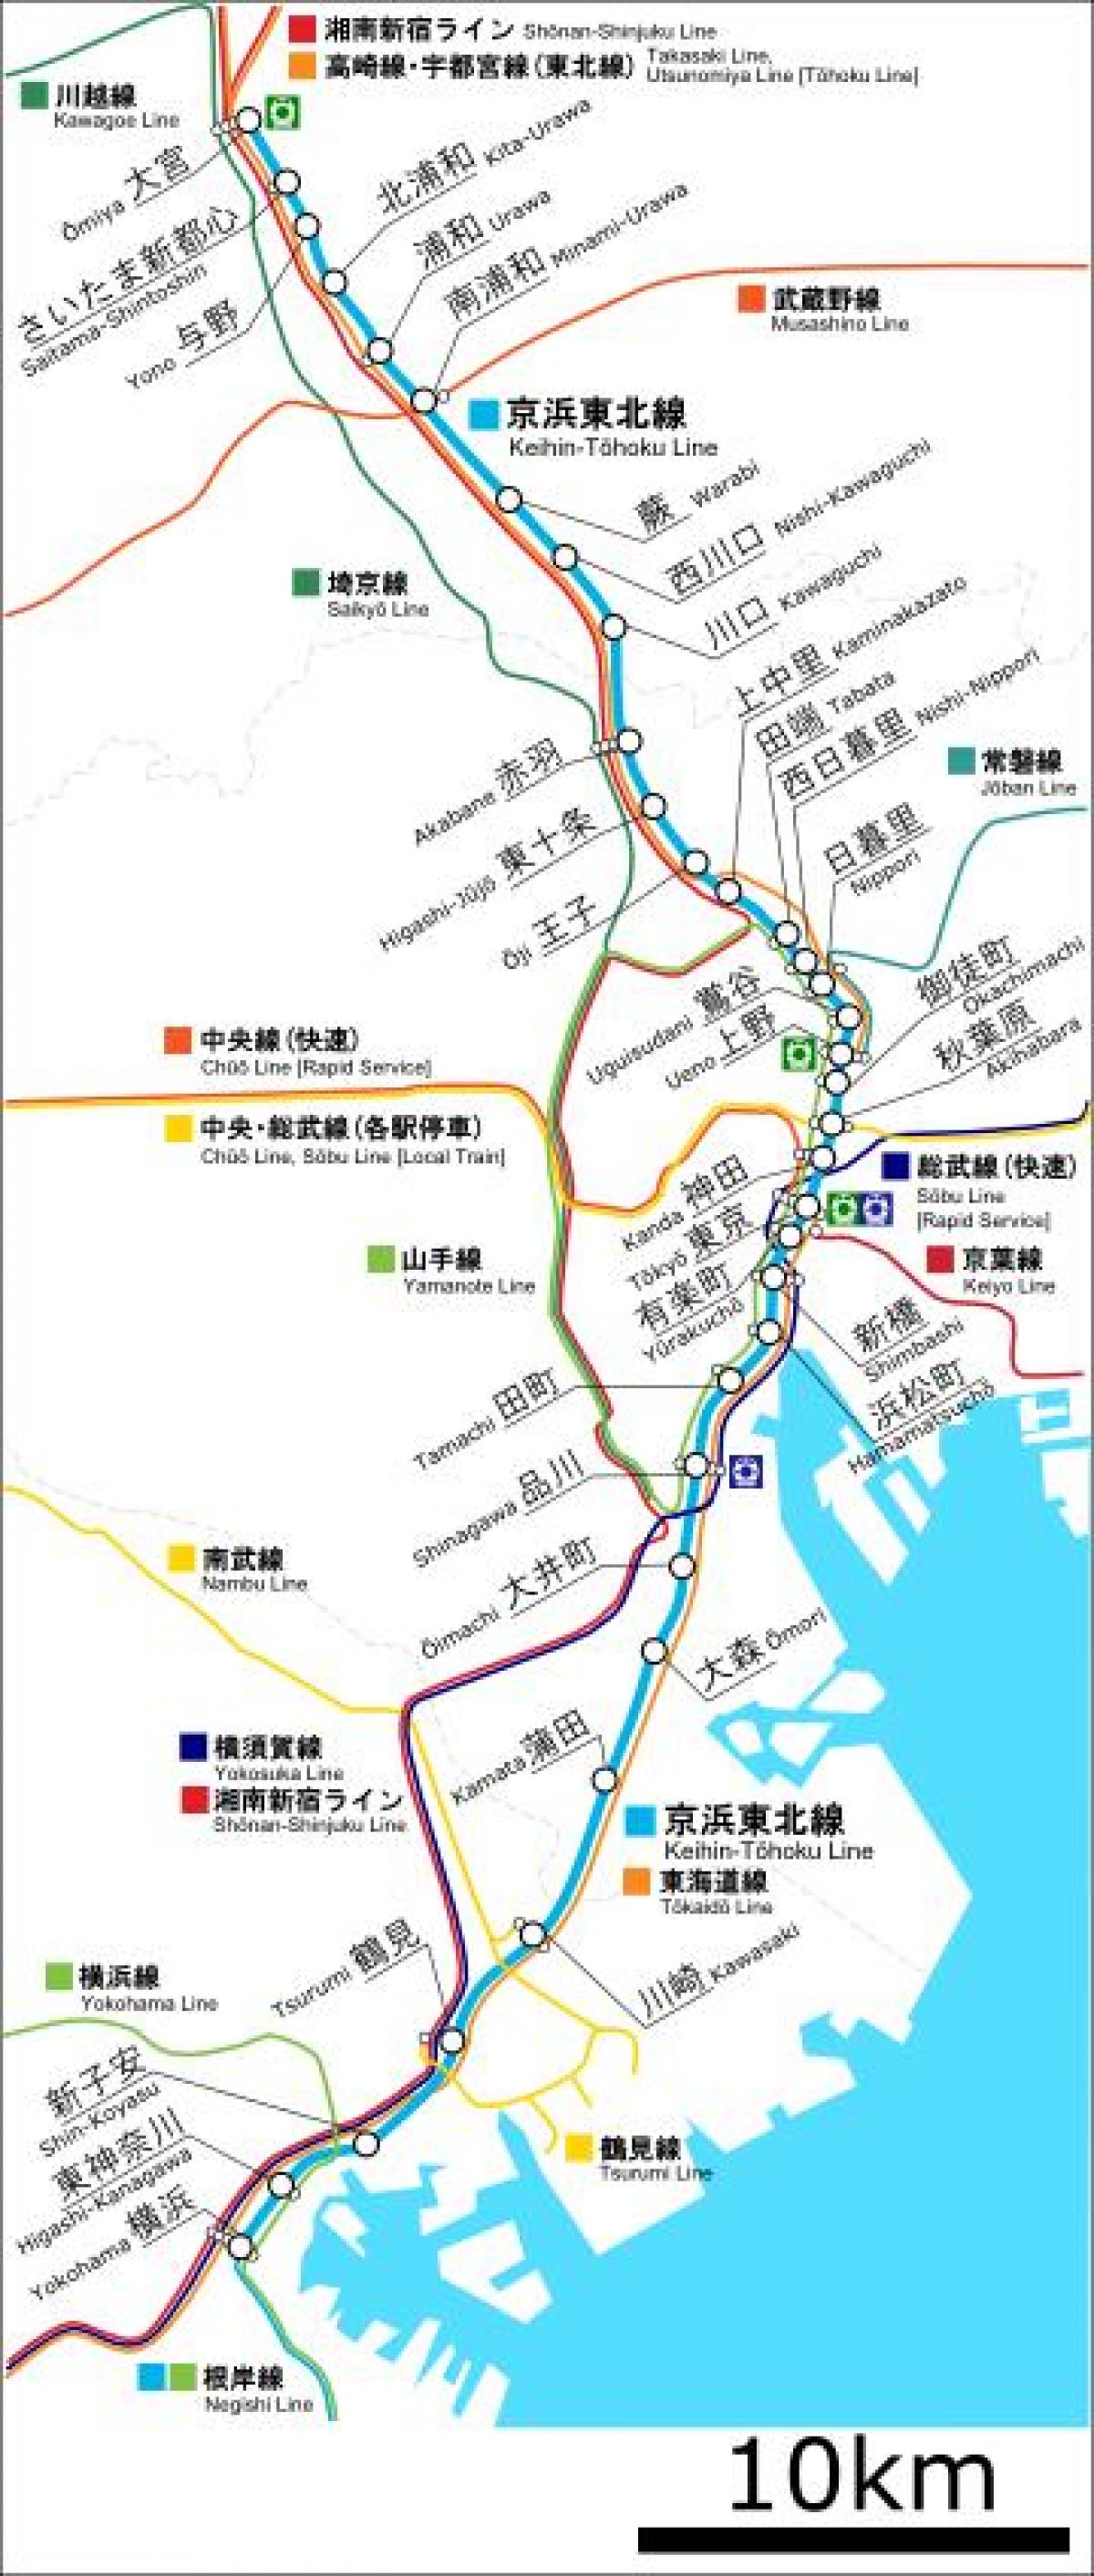 карта линия Кэйхин тохоку